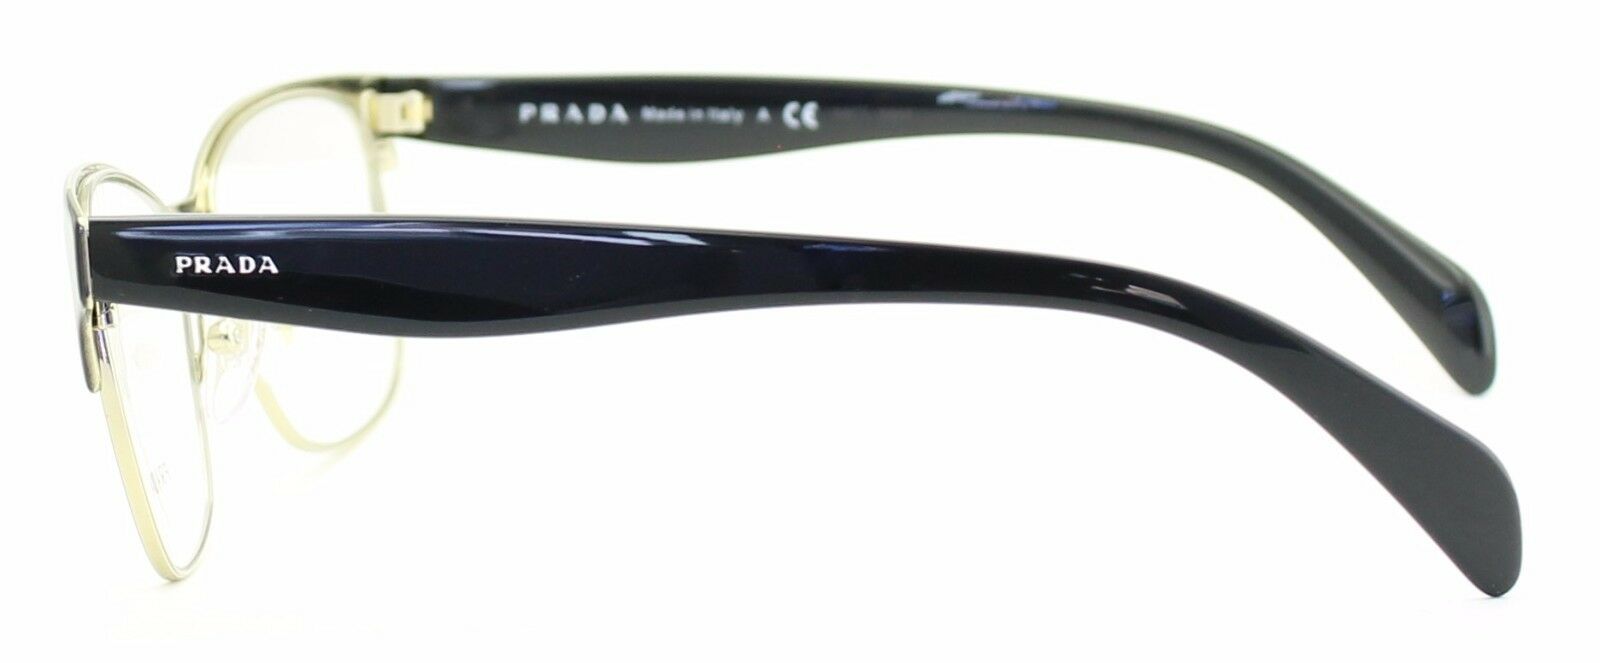 PRADA VPR 65R QE3-1O1 55mm Eyewear FRAMES RX Optical Eyeglasses Glasses - Italy